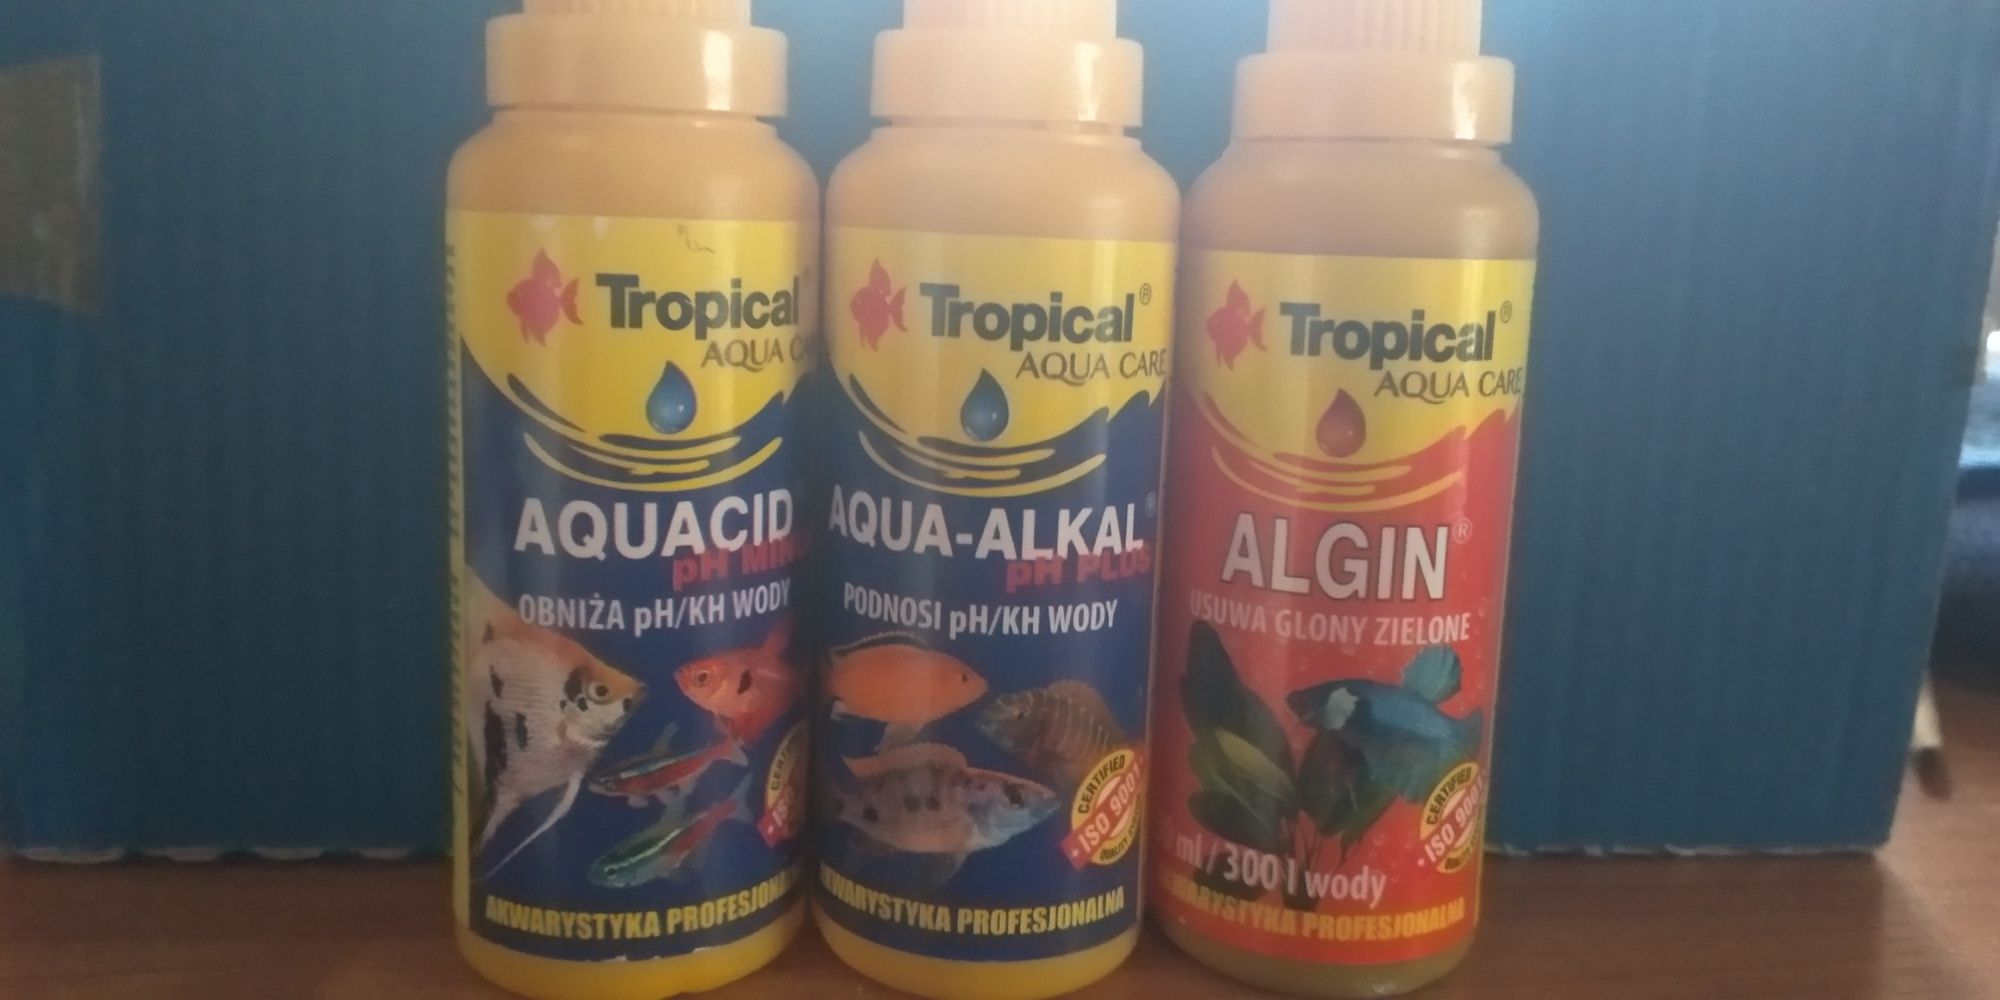 Tropical aquacid aqualkal i algin